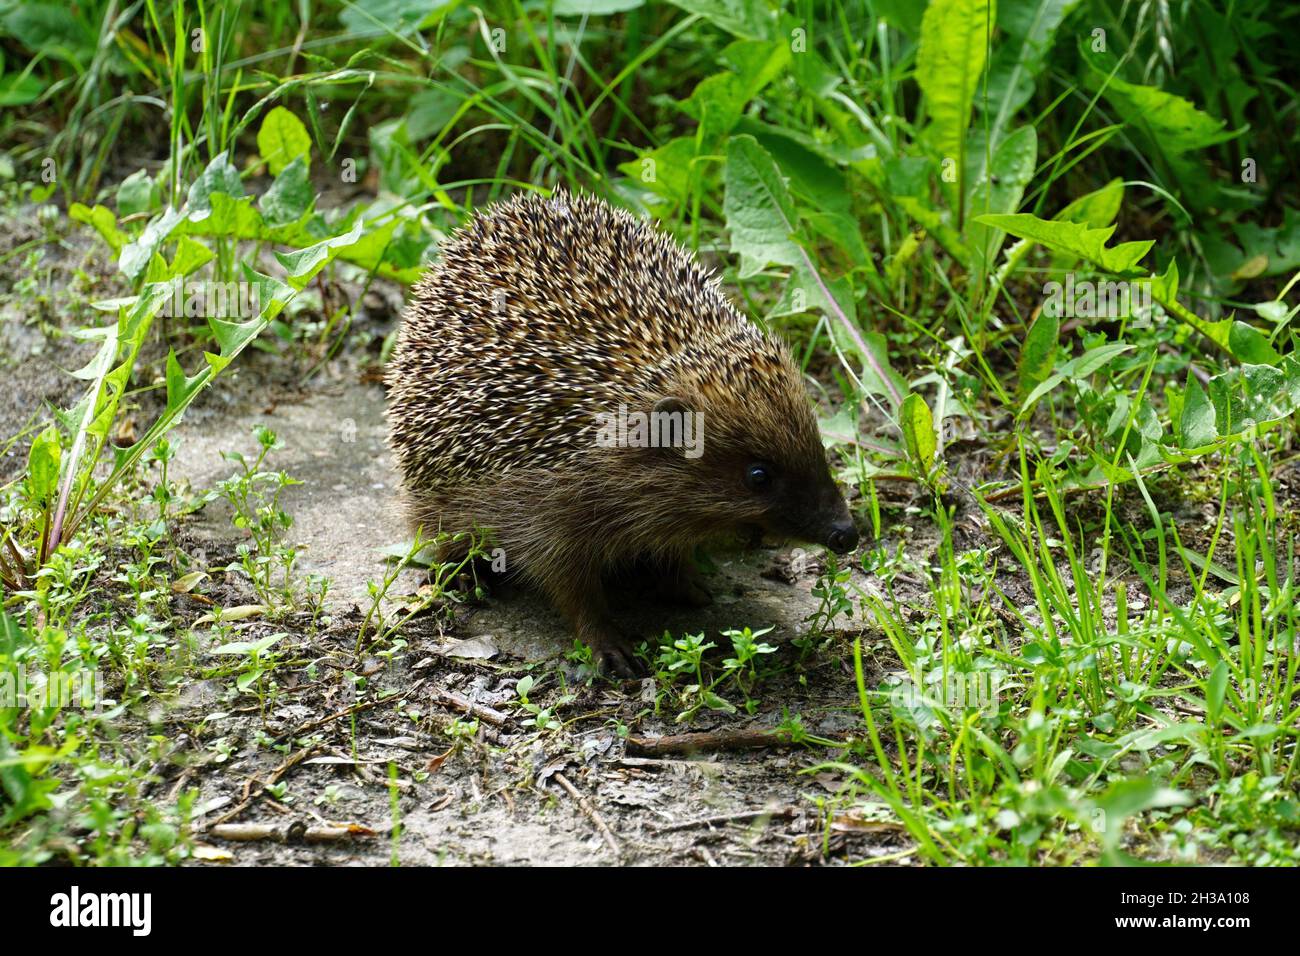 Hedgehog nel suo habitat naturale. Fotografia della fauna selvatica Foto Stock